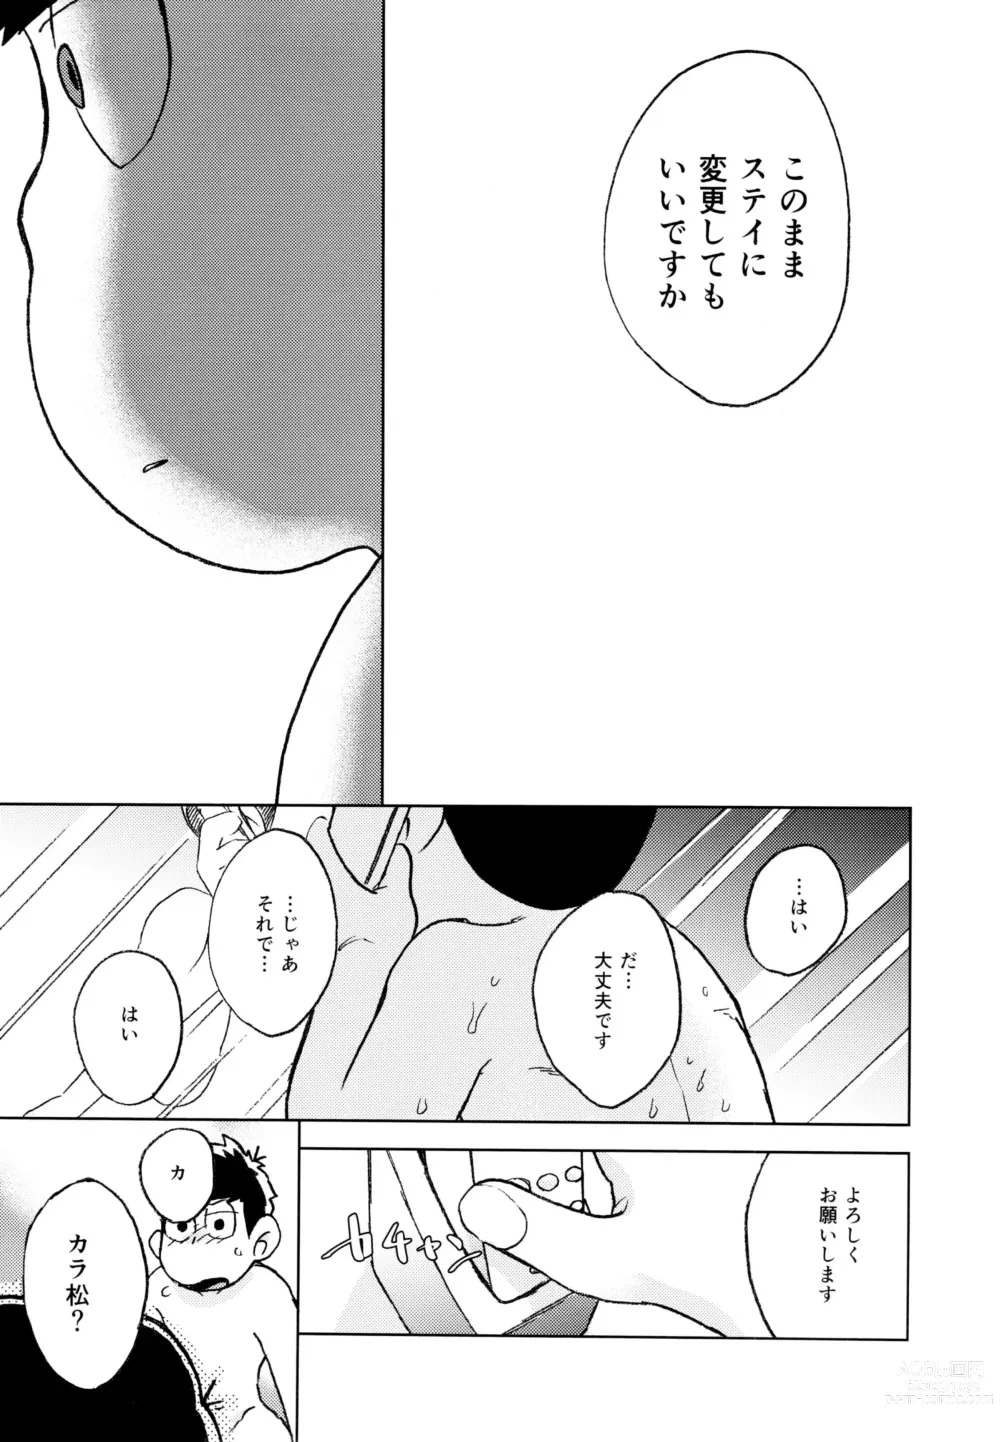 Page 69 of doujinshi Konna Chiisana Rakuen ni